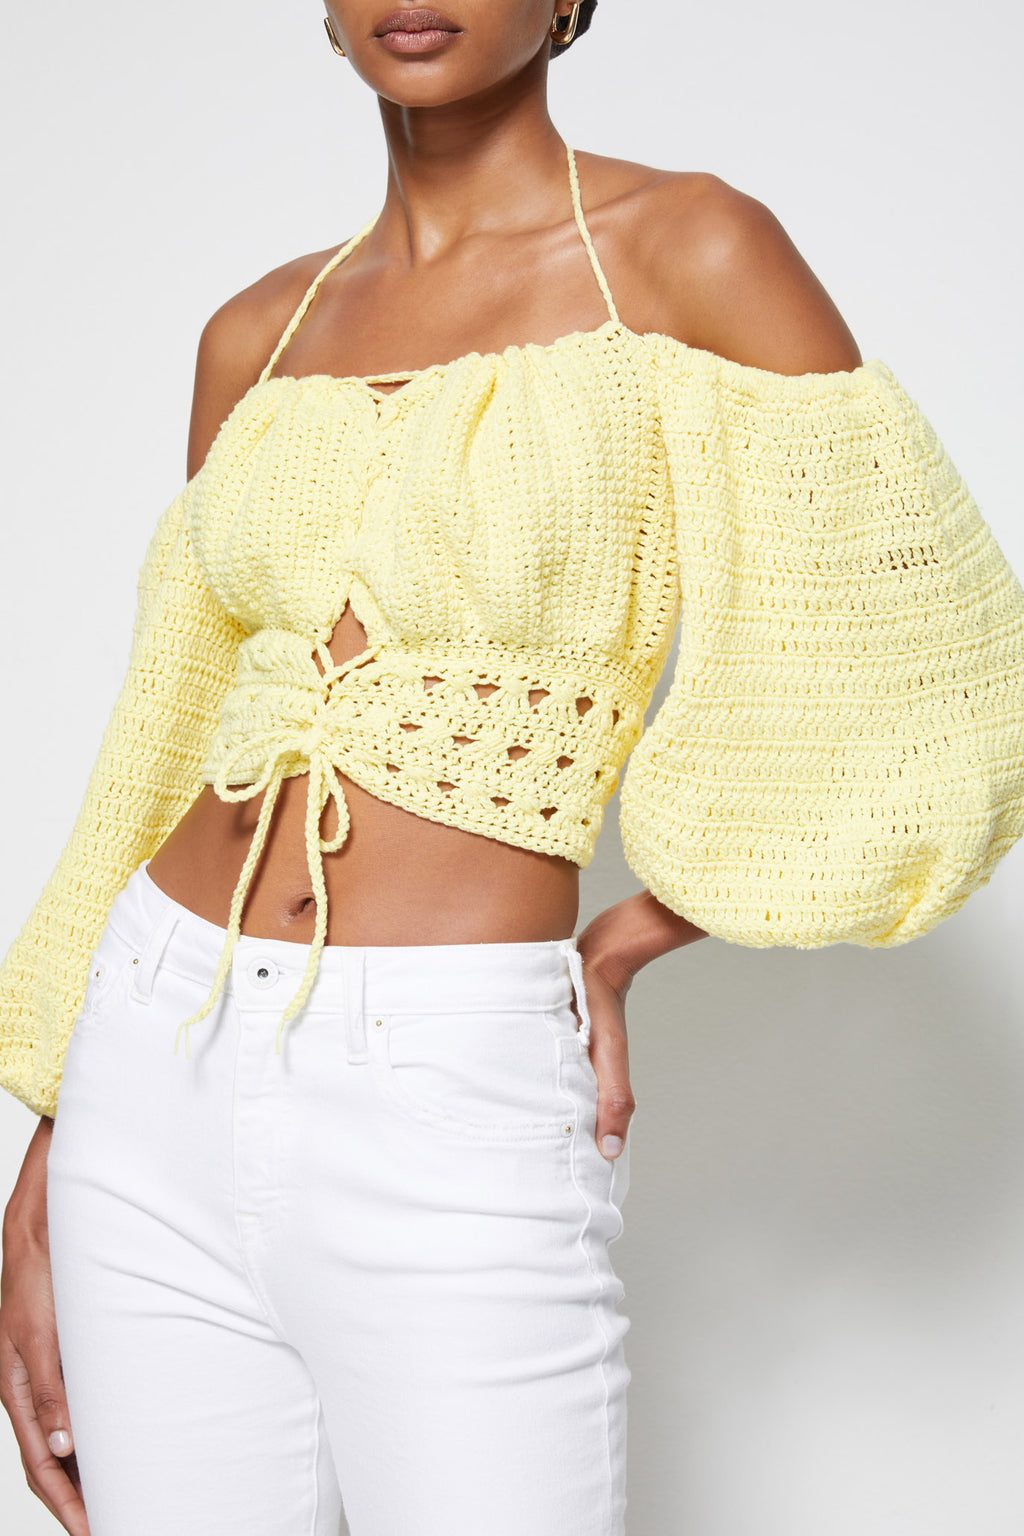 JS x Elexiay Crochet Top